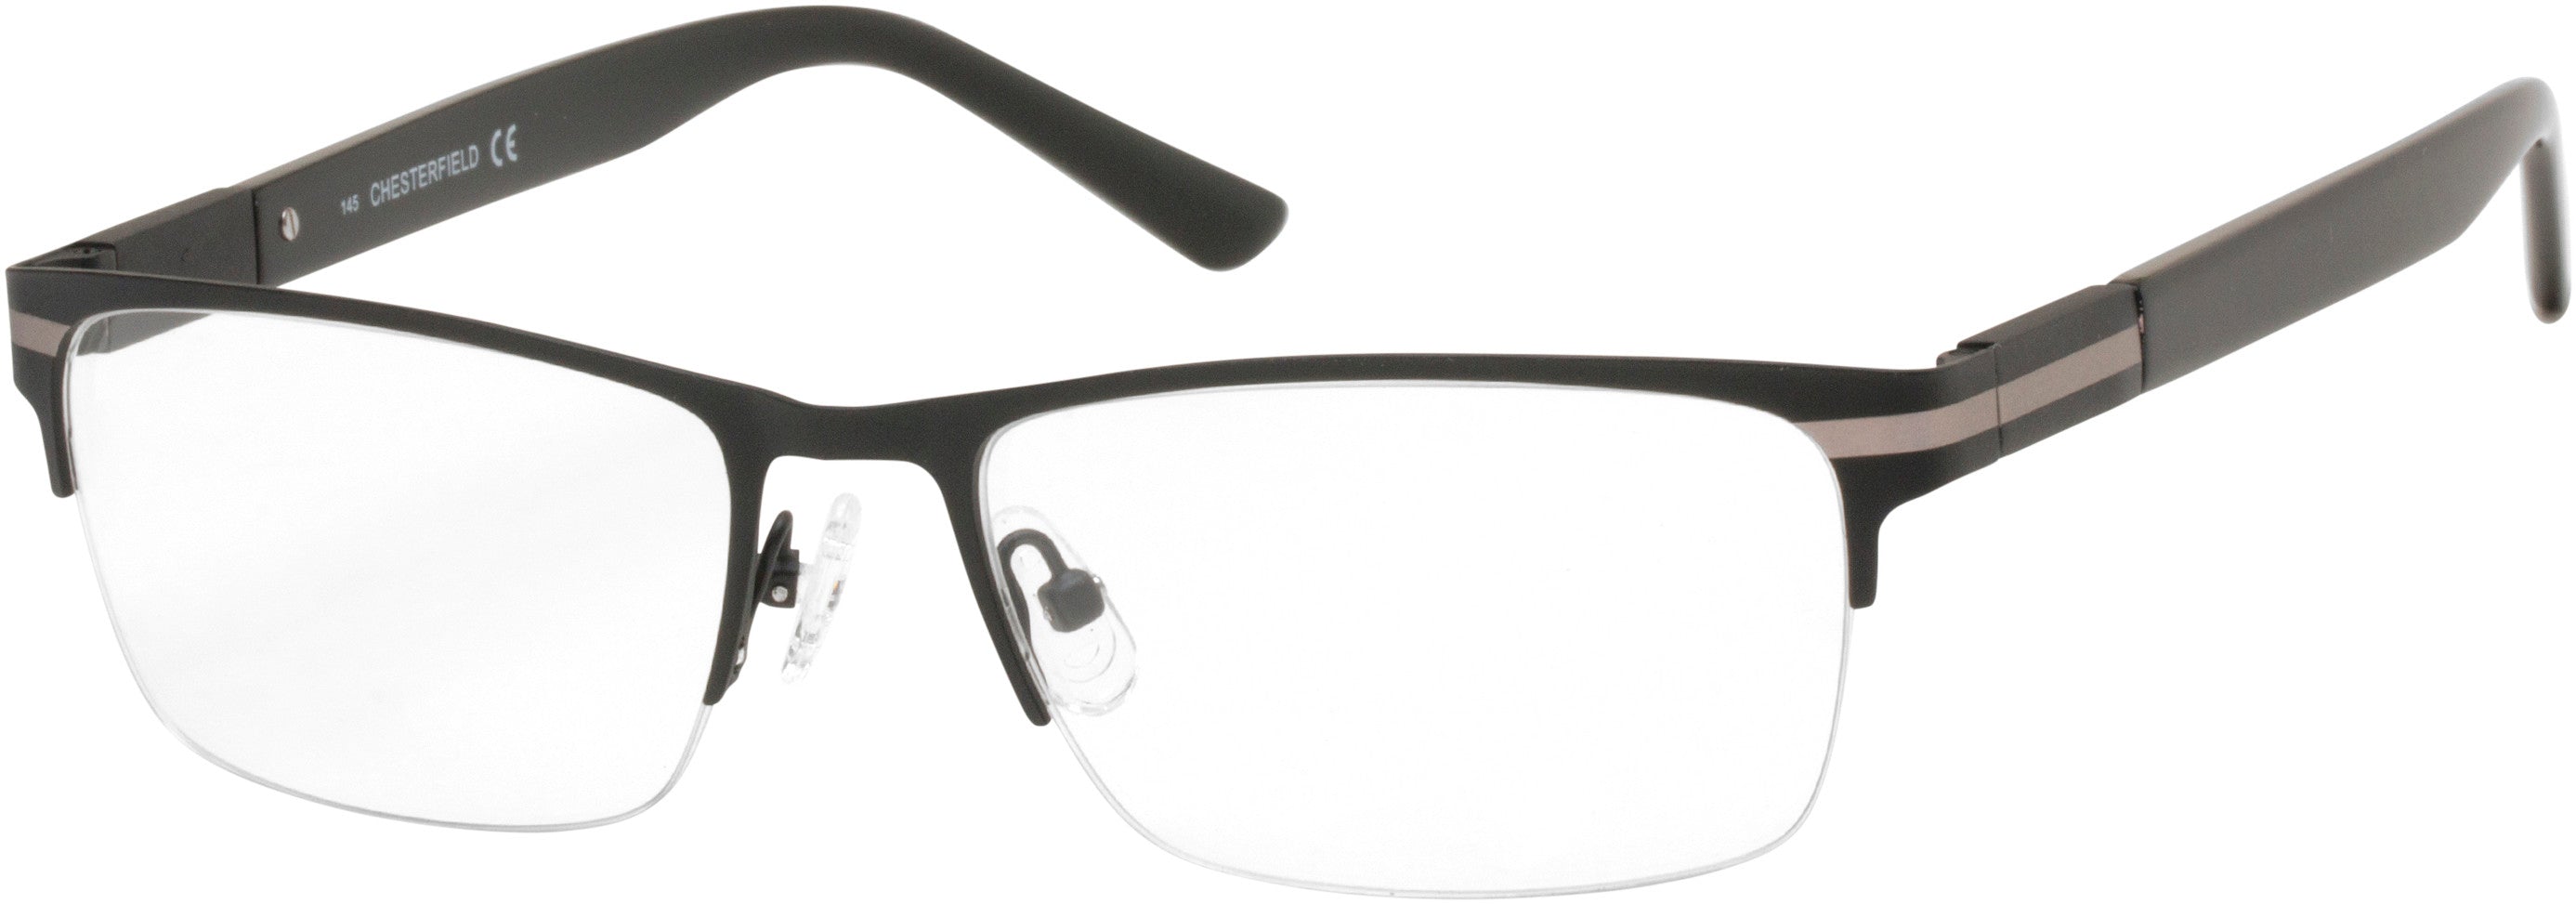  Chesterfield 62XL Rectangular Eyeglasses 0003-0003  Matte Black (00 Demo Lens)